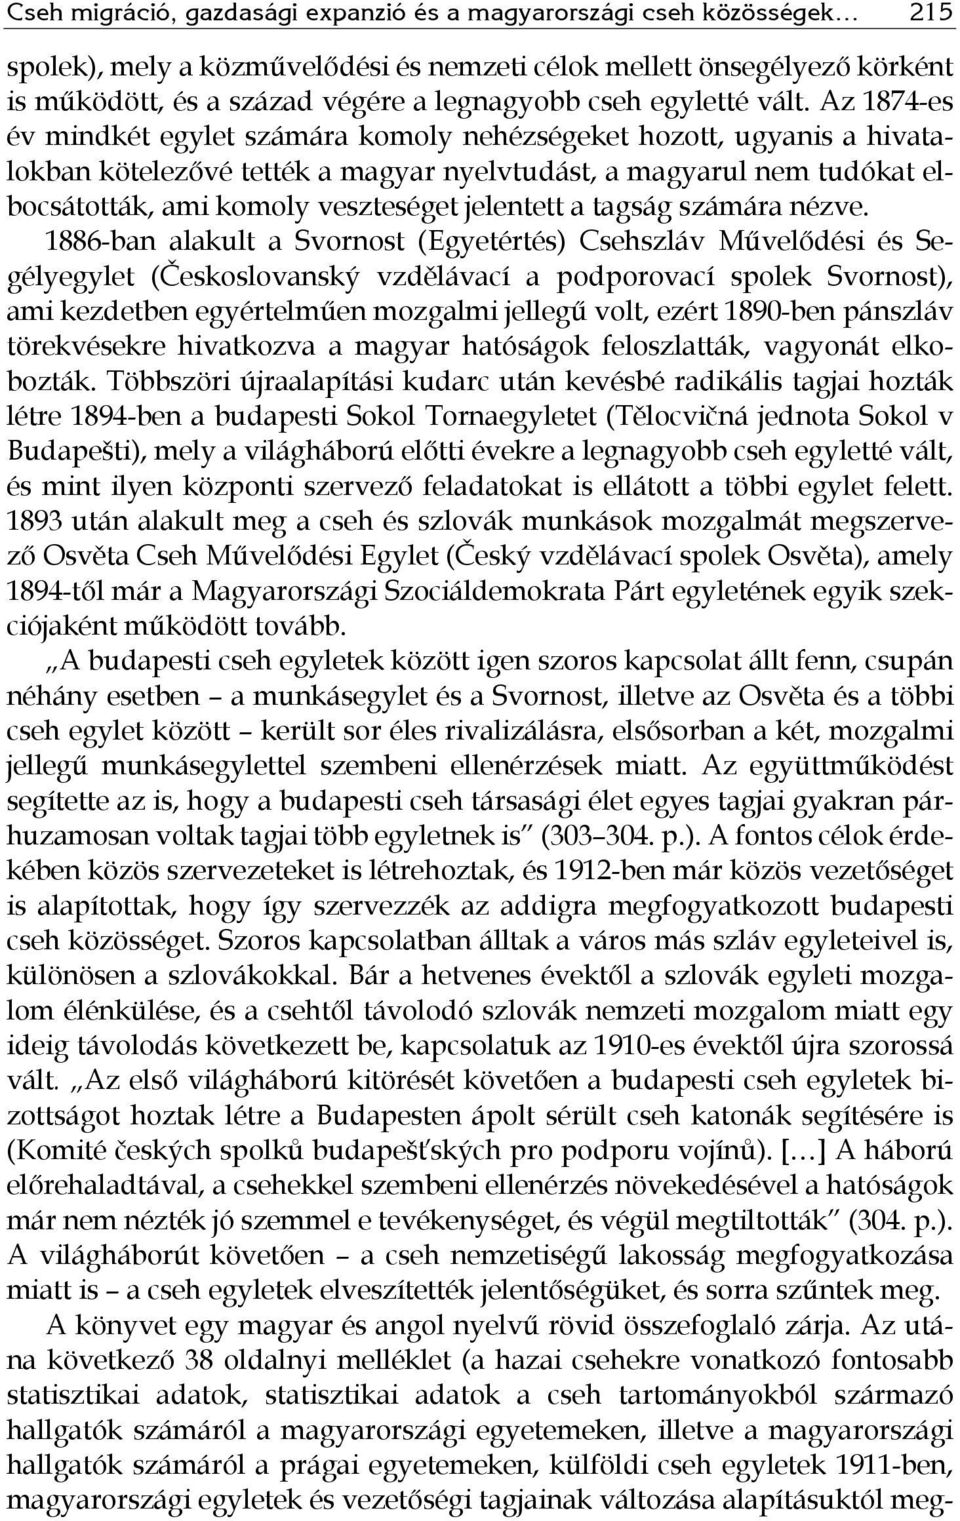 Az 1874-es év mindkét egylet számára komoly nehézségeket hozott, ugyanis a hivatalokban kötelezővé tették a magyar nyelvtudást, a magyarul nem tudókat elbocsátották, ami komoly veszteséget jelentett